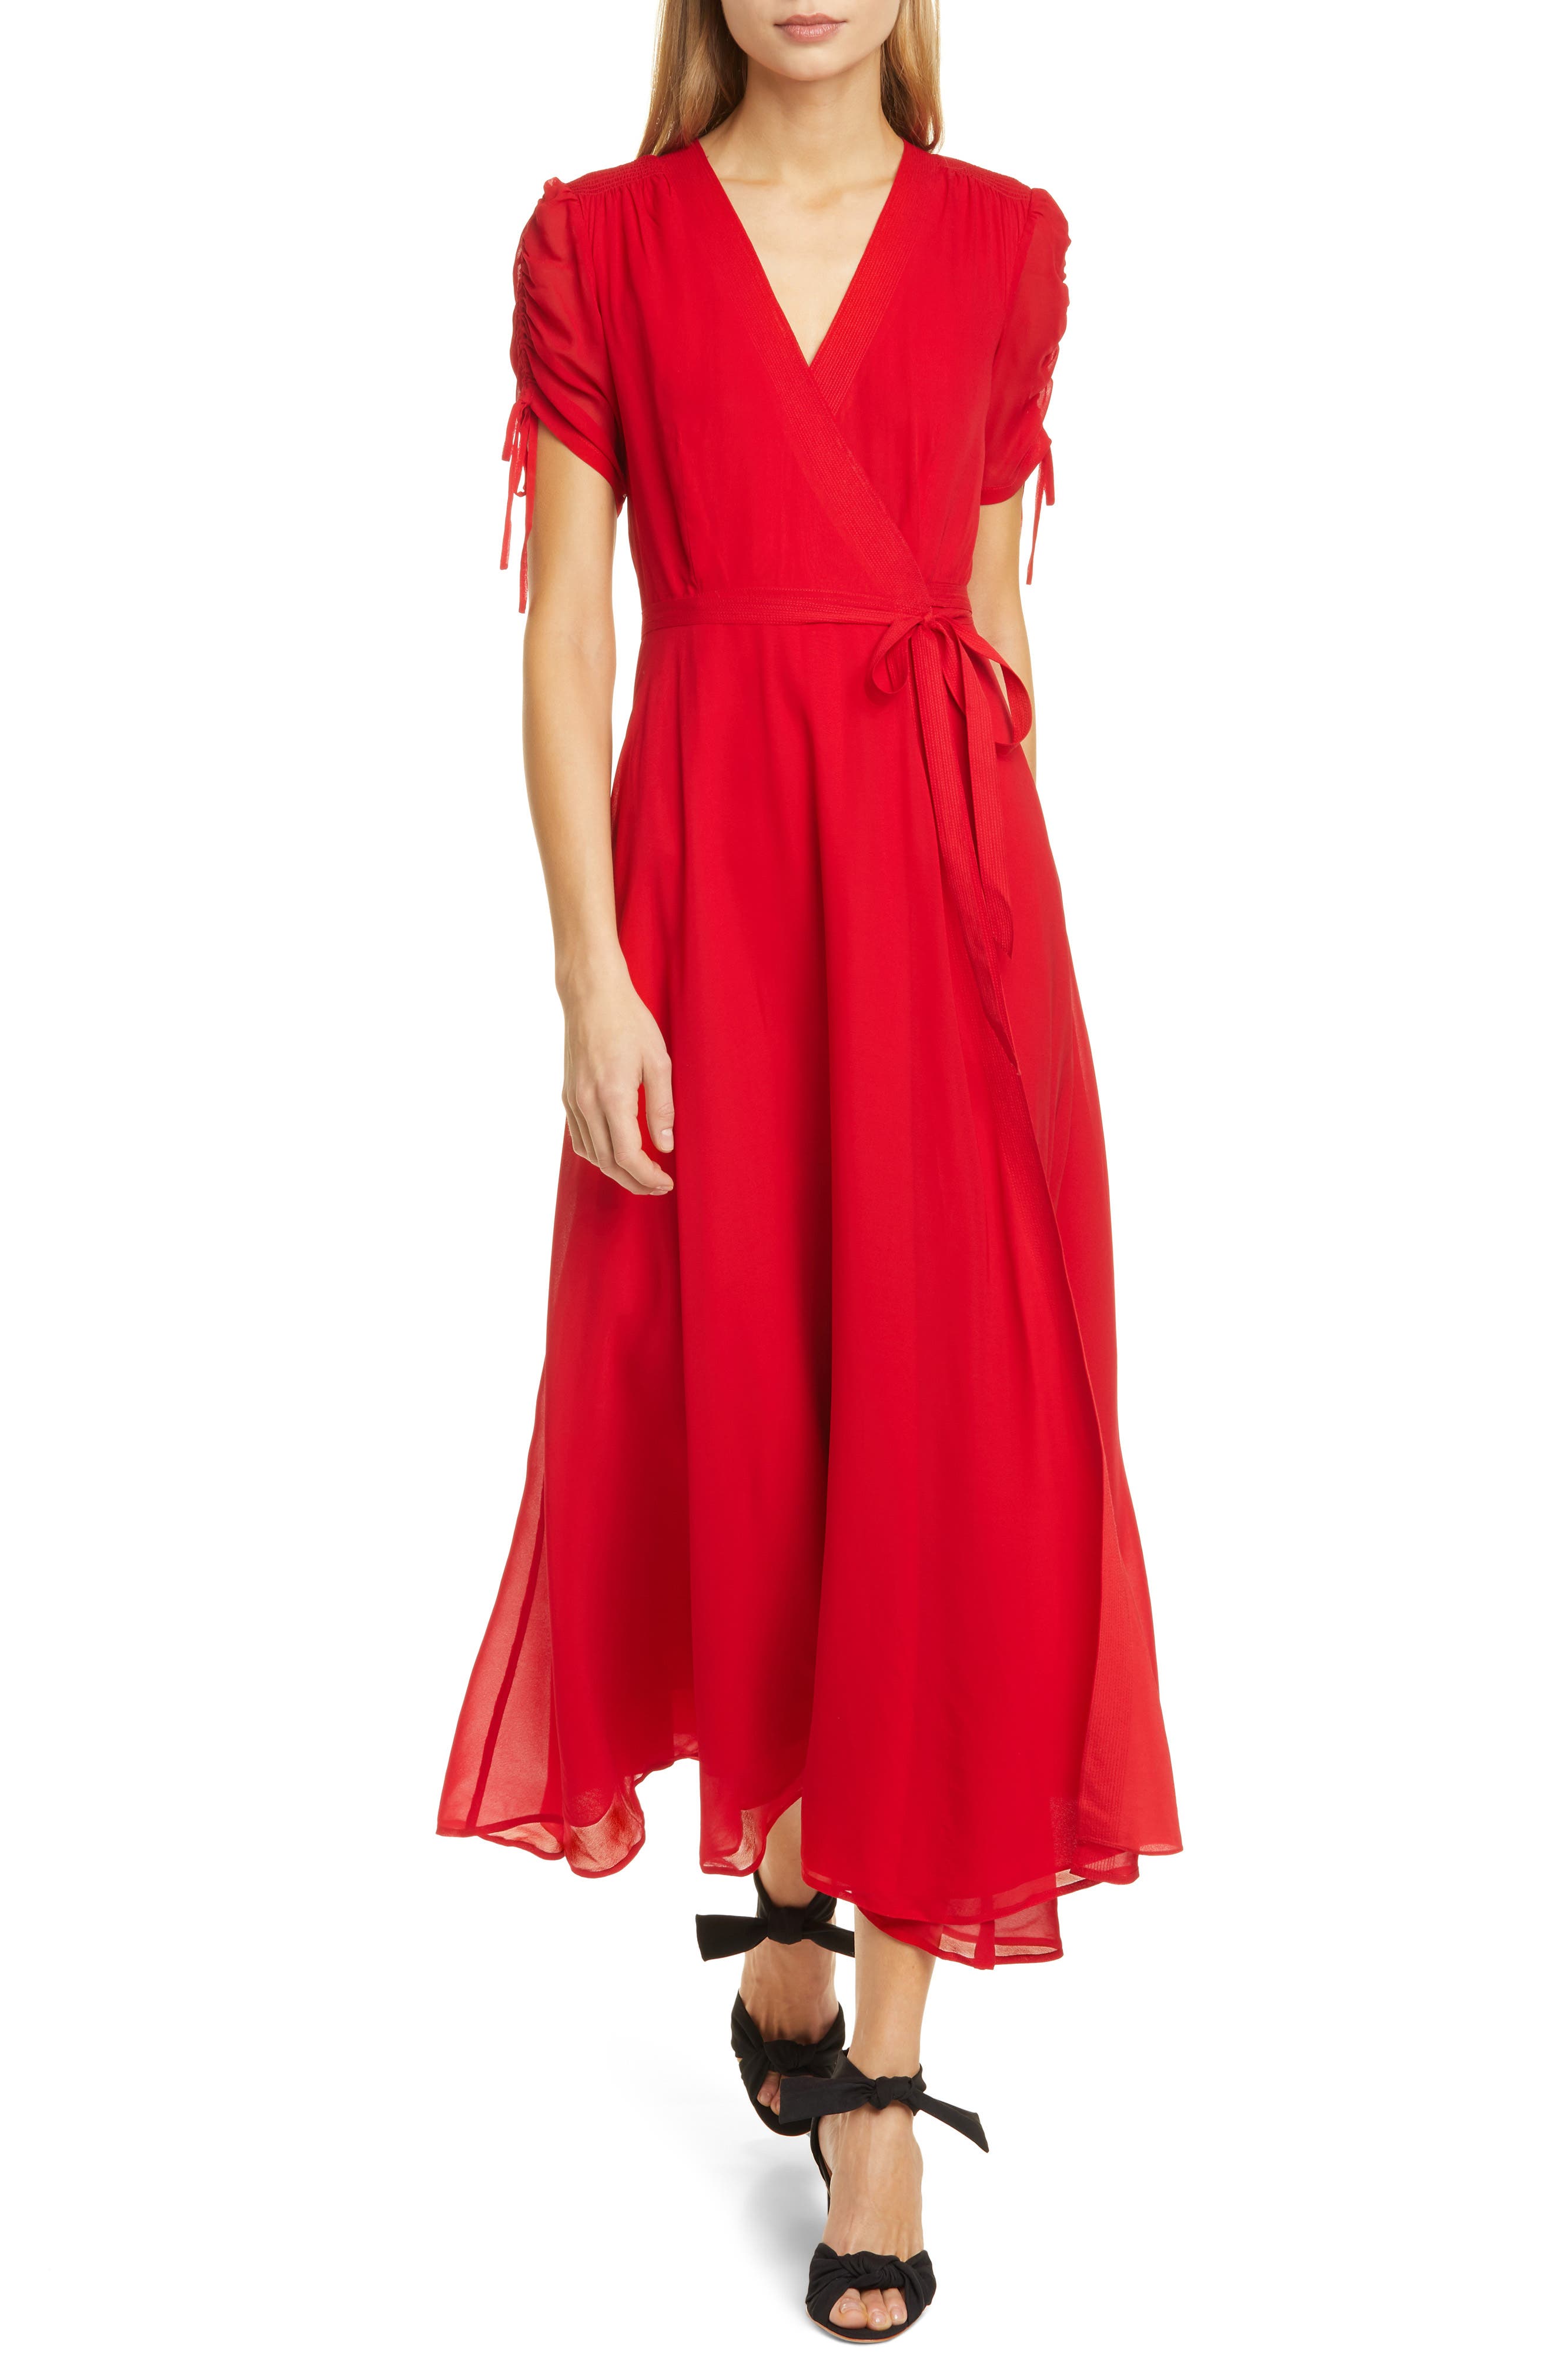 polo ralph lauren red dress